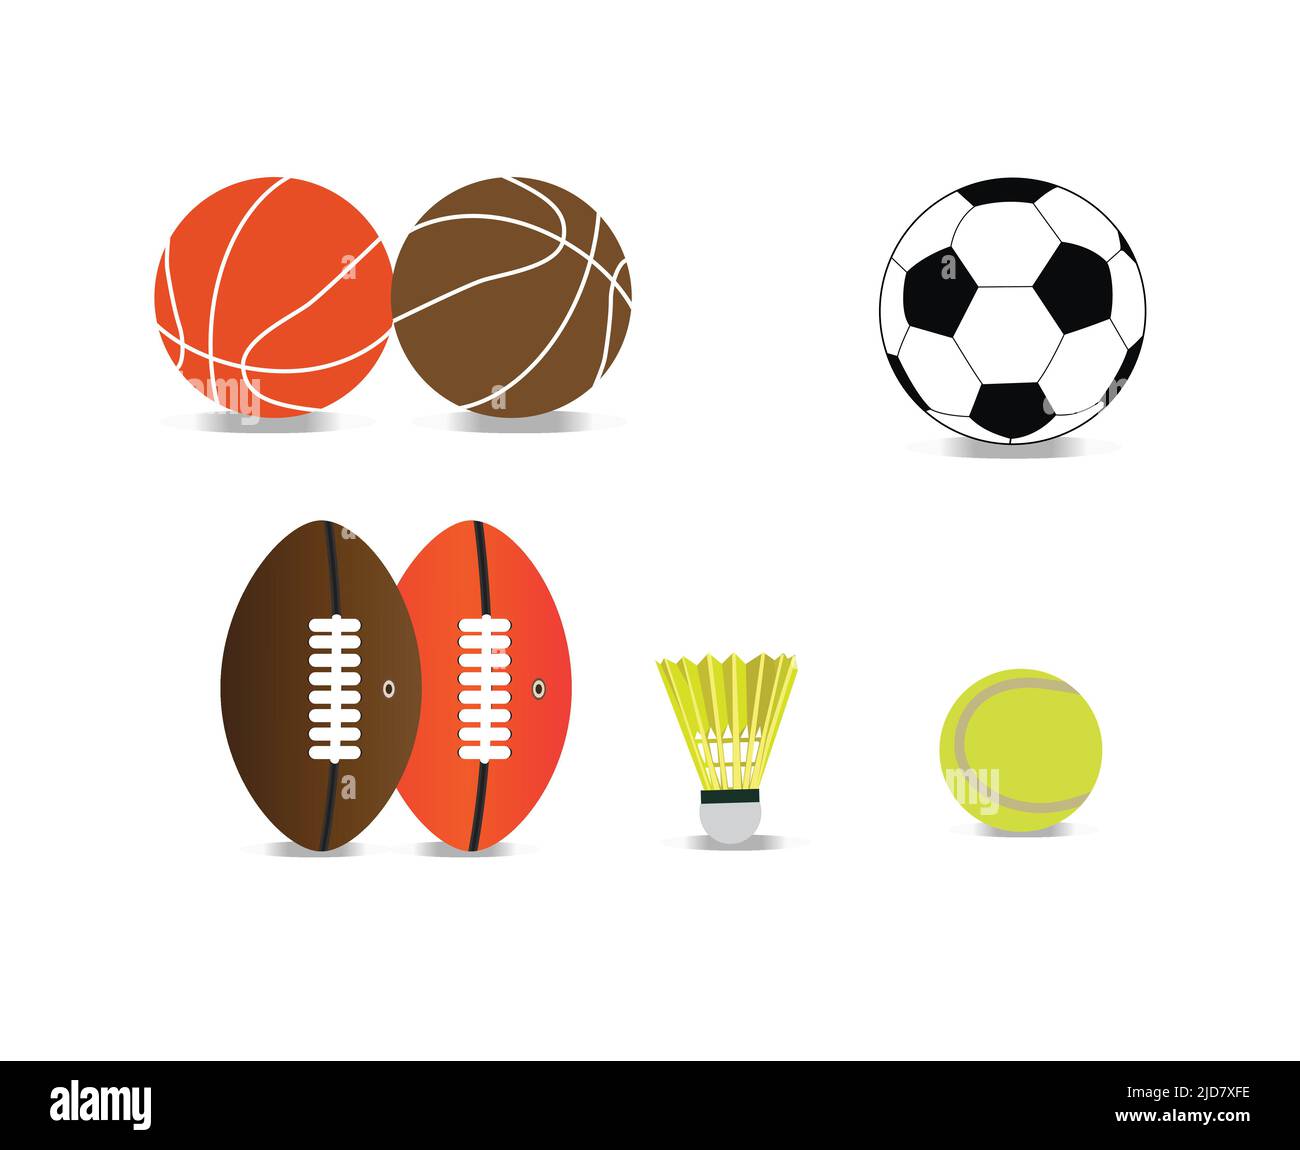 pelota de baloncesto, rugby, corcho y tenis Ilustración del Vector